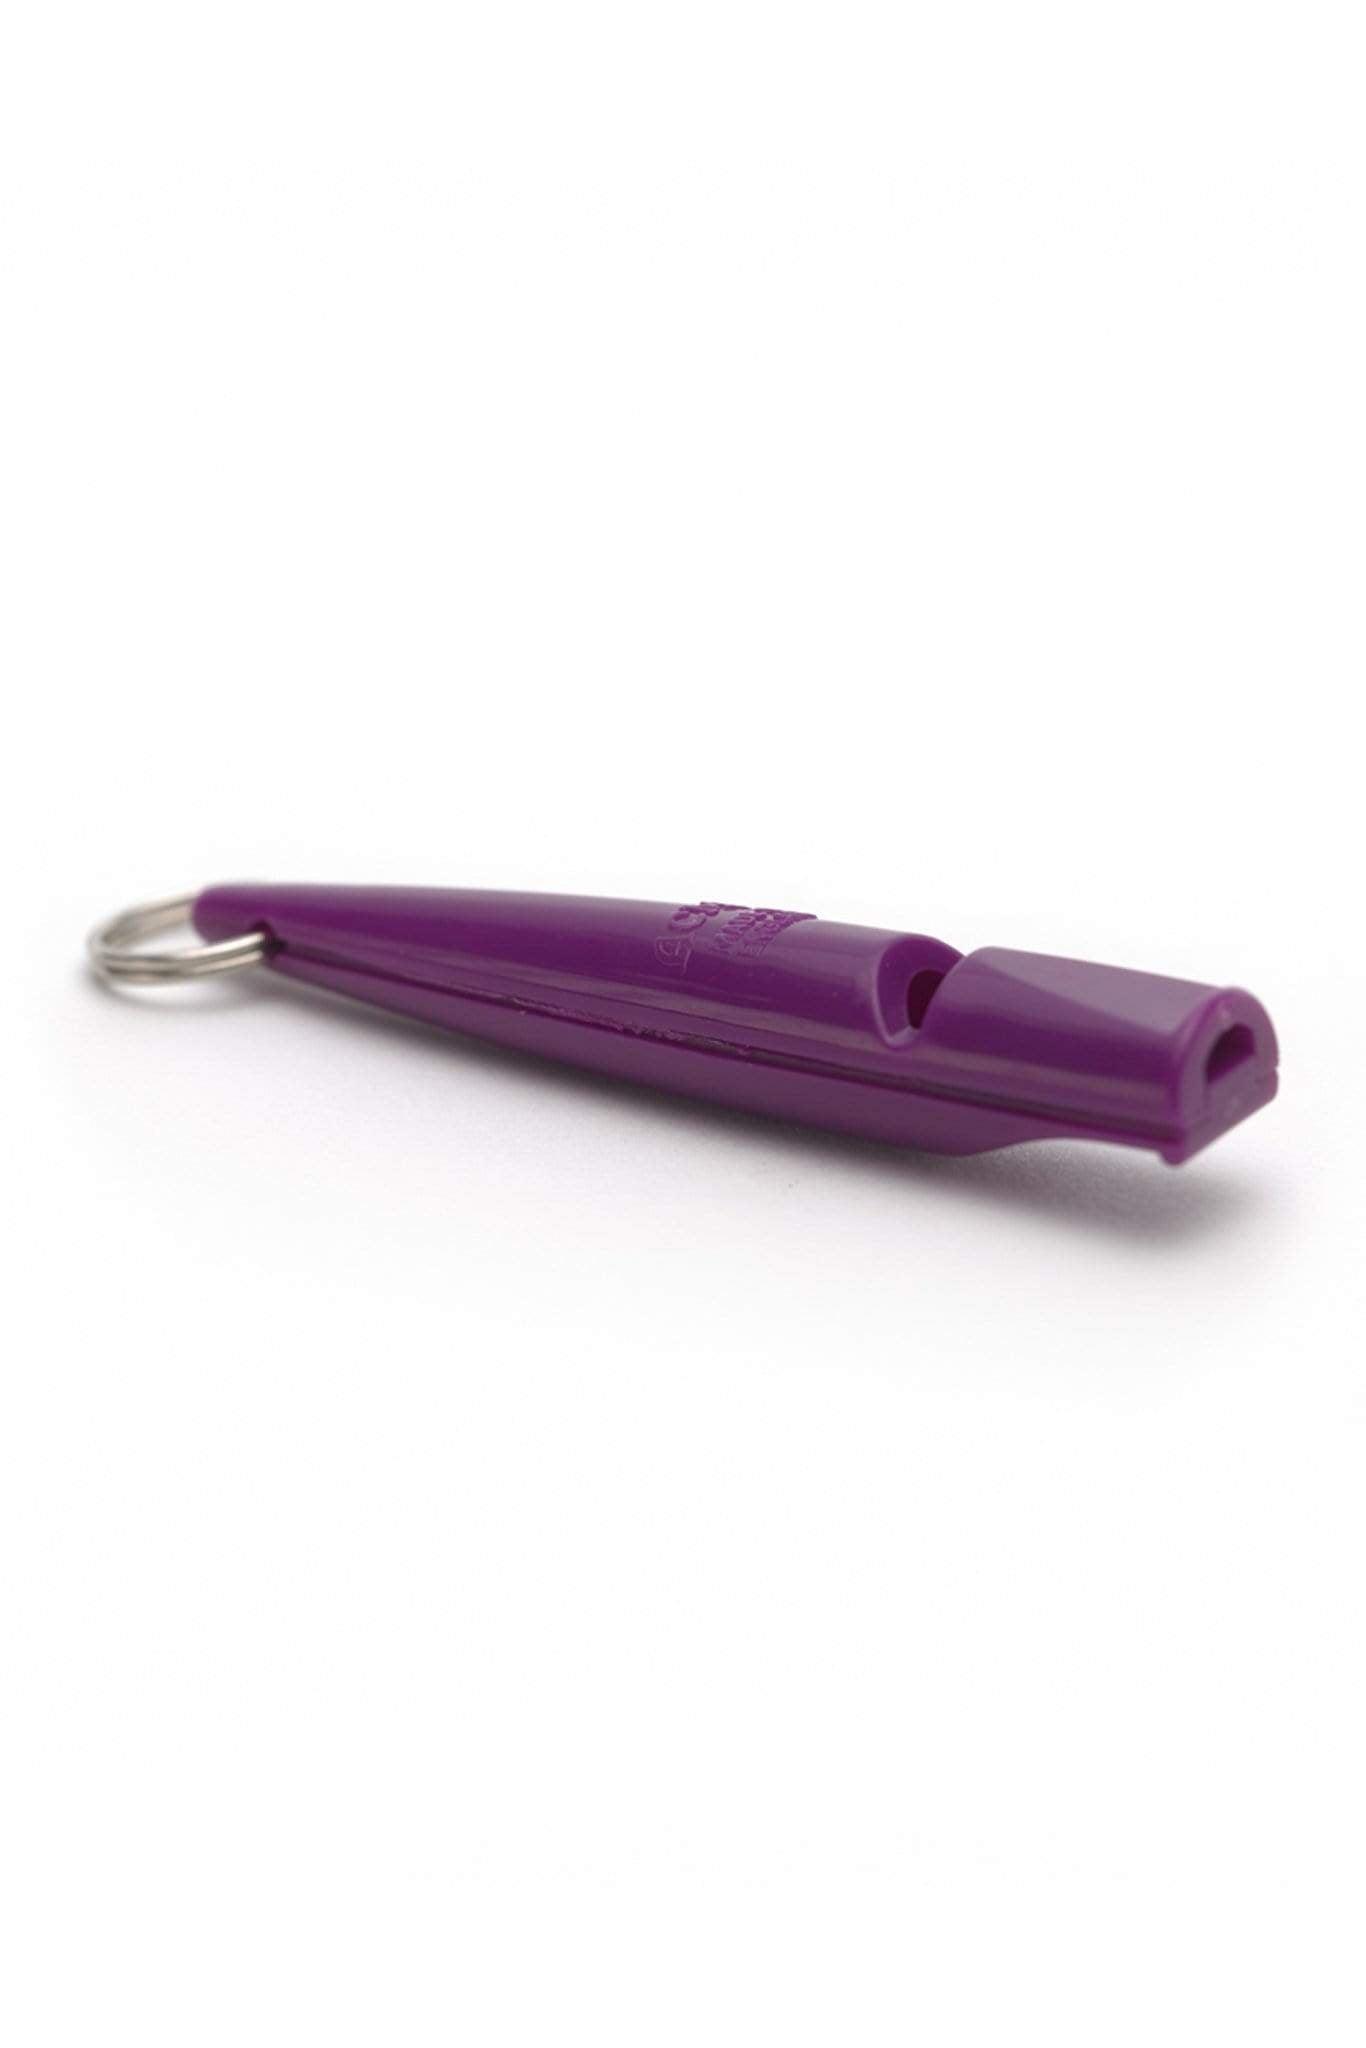 ACME Whistles & Lanyards Purple ACME Dog Training Whistle 210.5 - Purple